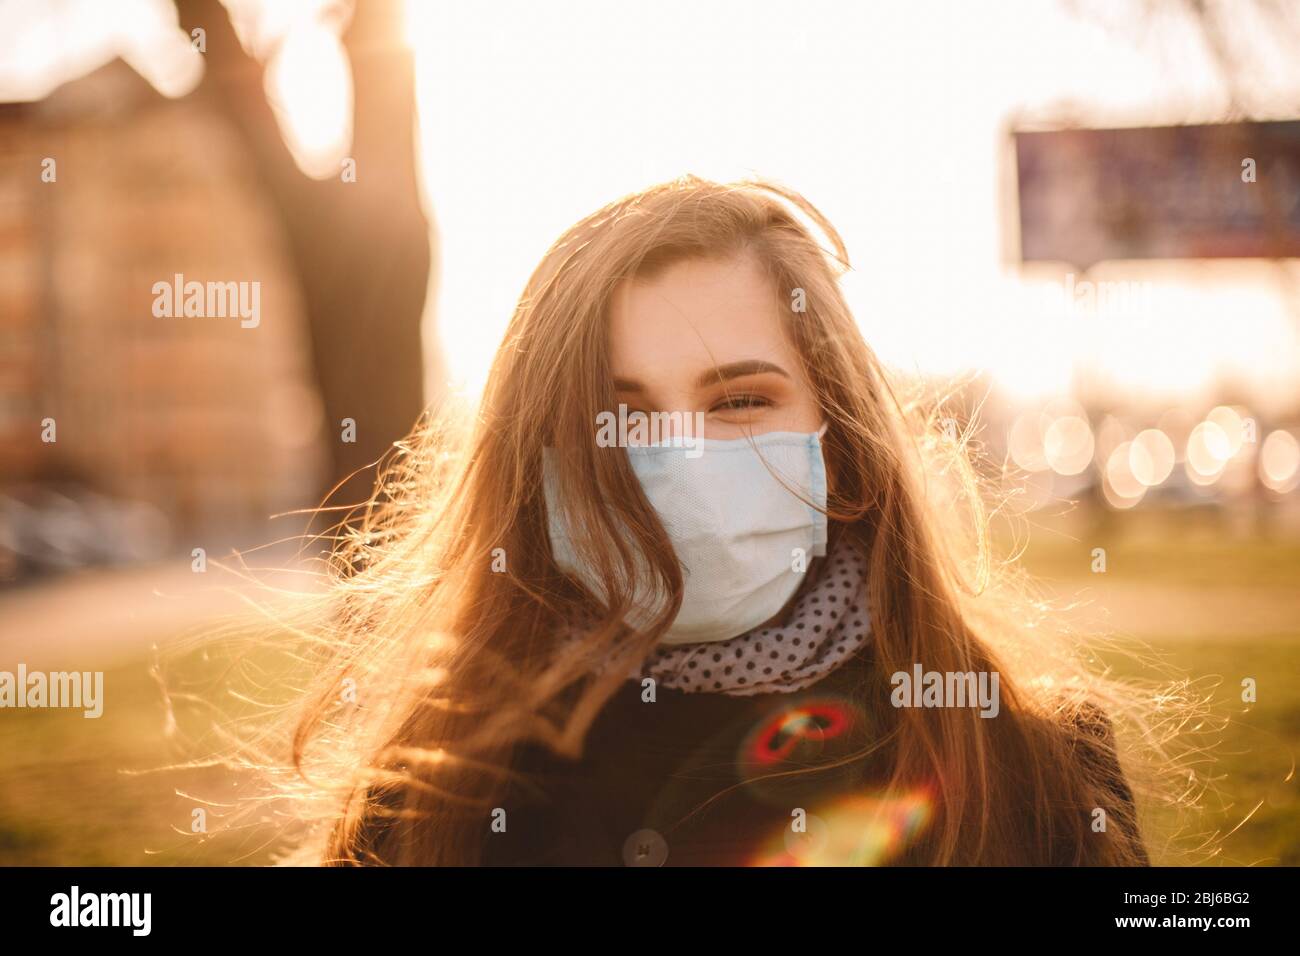 Portrait de heureuse jeune femme portant un masque médical protecteur face debout en ville au coucher du soleil Banque D'Images